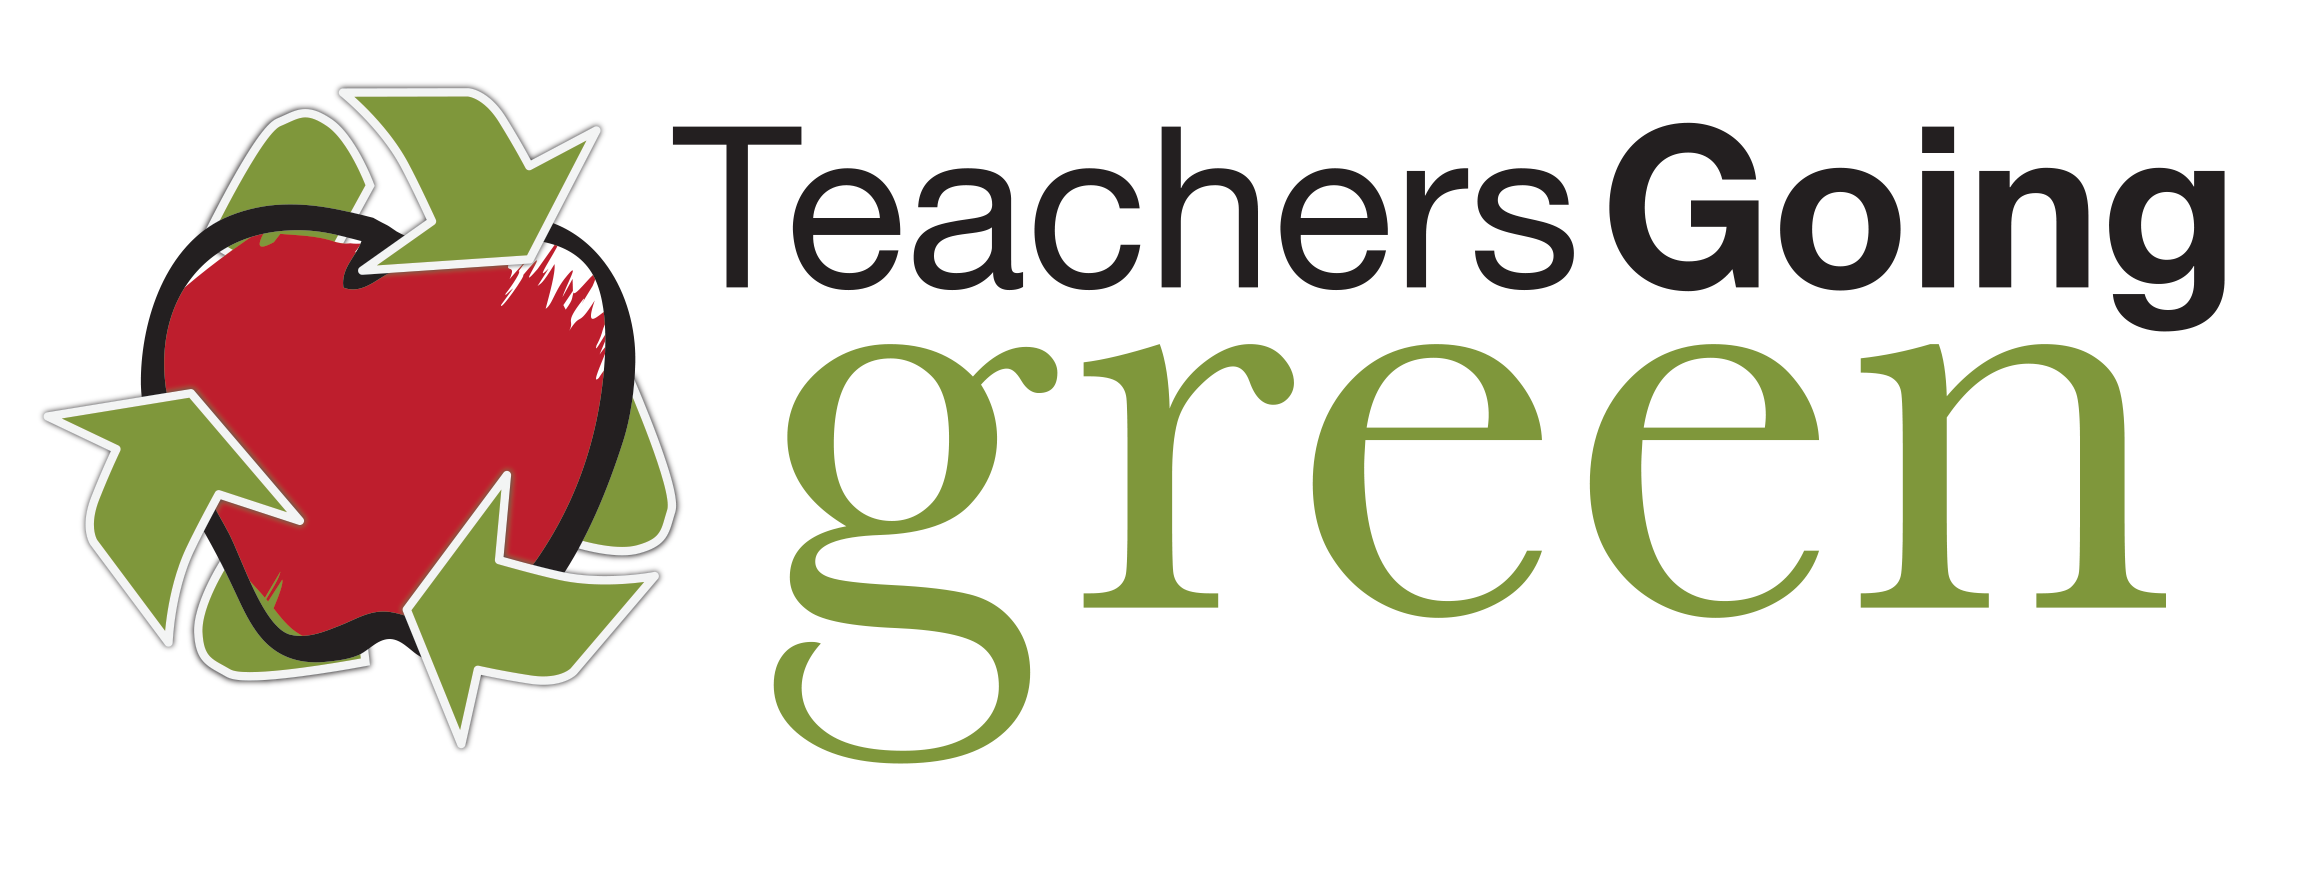 Teachers Going Green